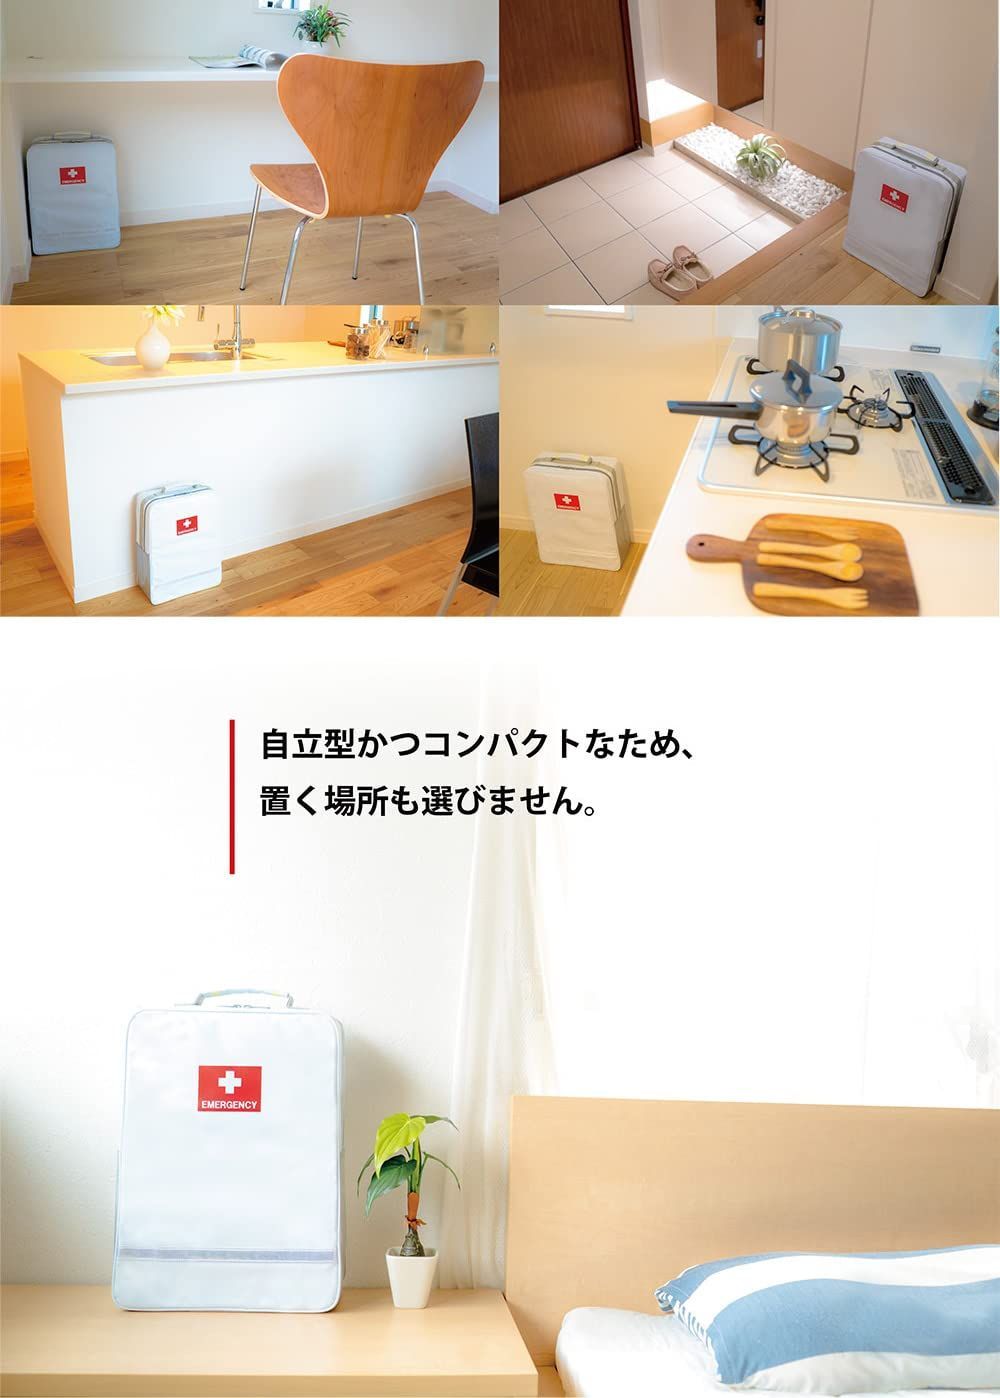 新着商品】非常持出袋単品防災リュック 防炎・防水素材 日本製 止水ファスナー